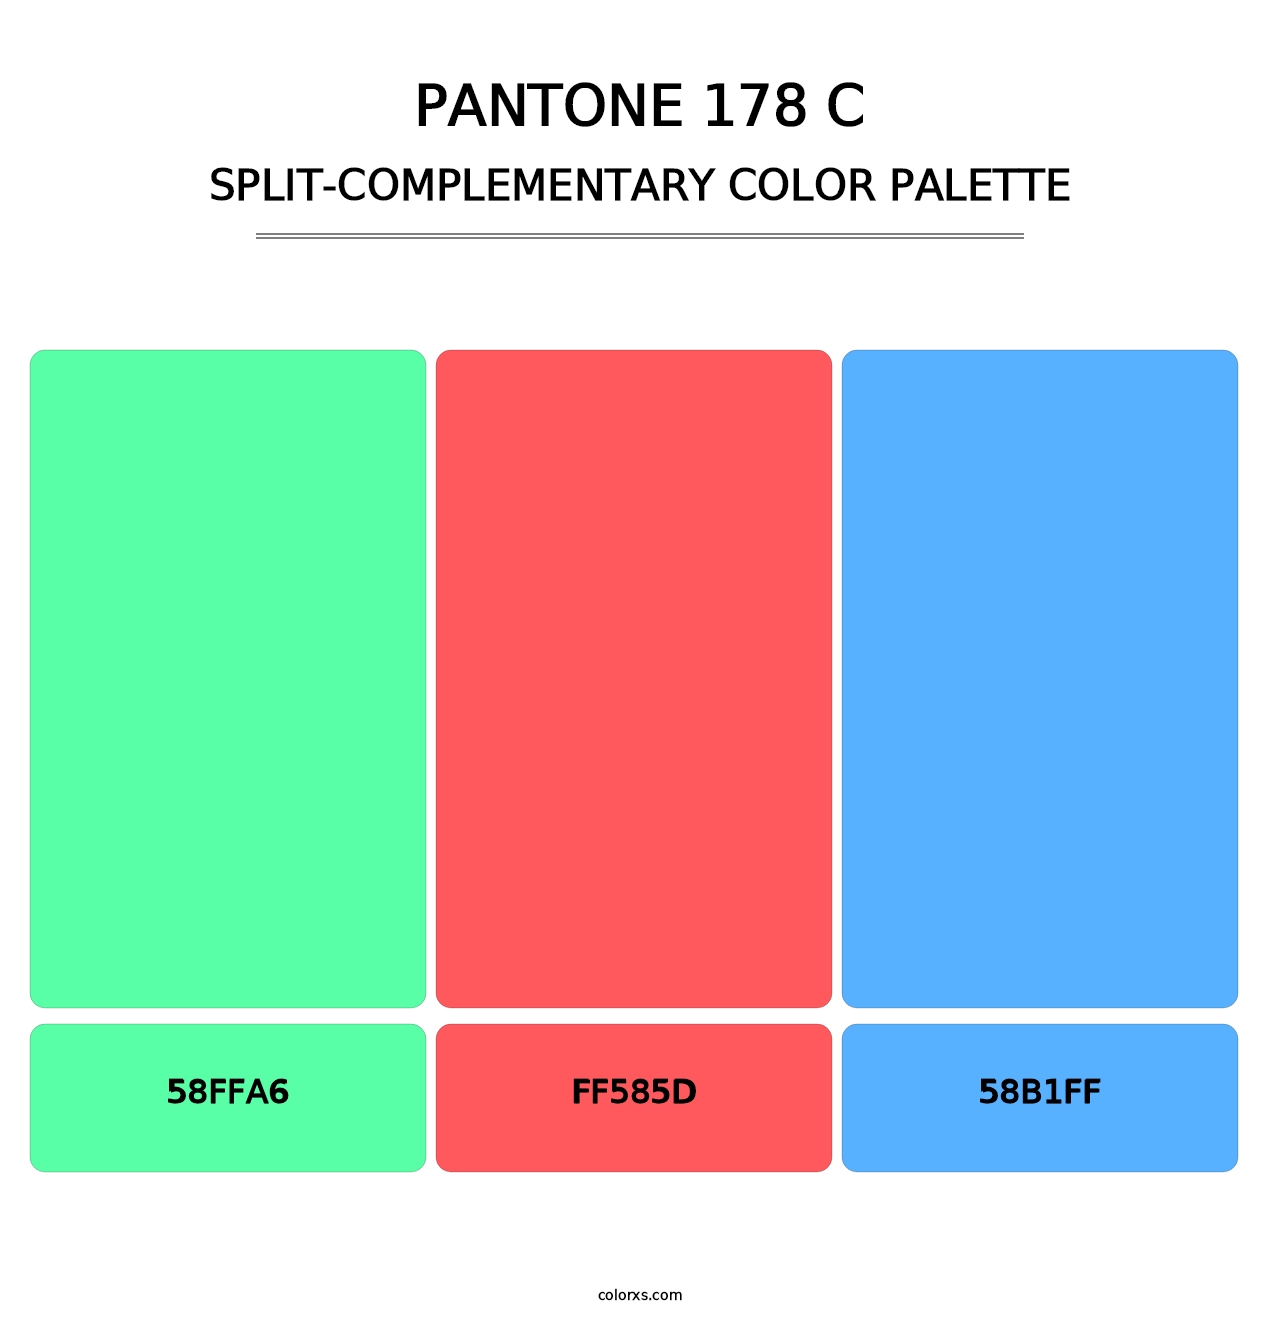 PANTONE 178 C - Split-Complementary Color Palette